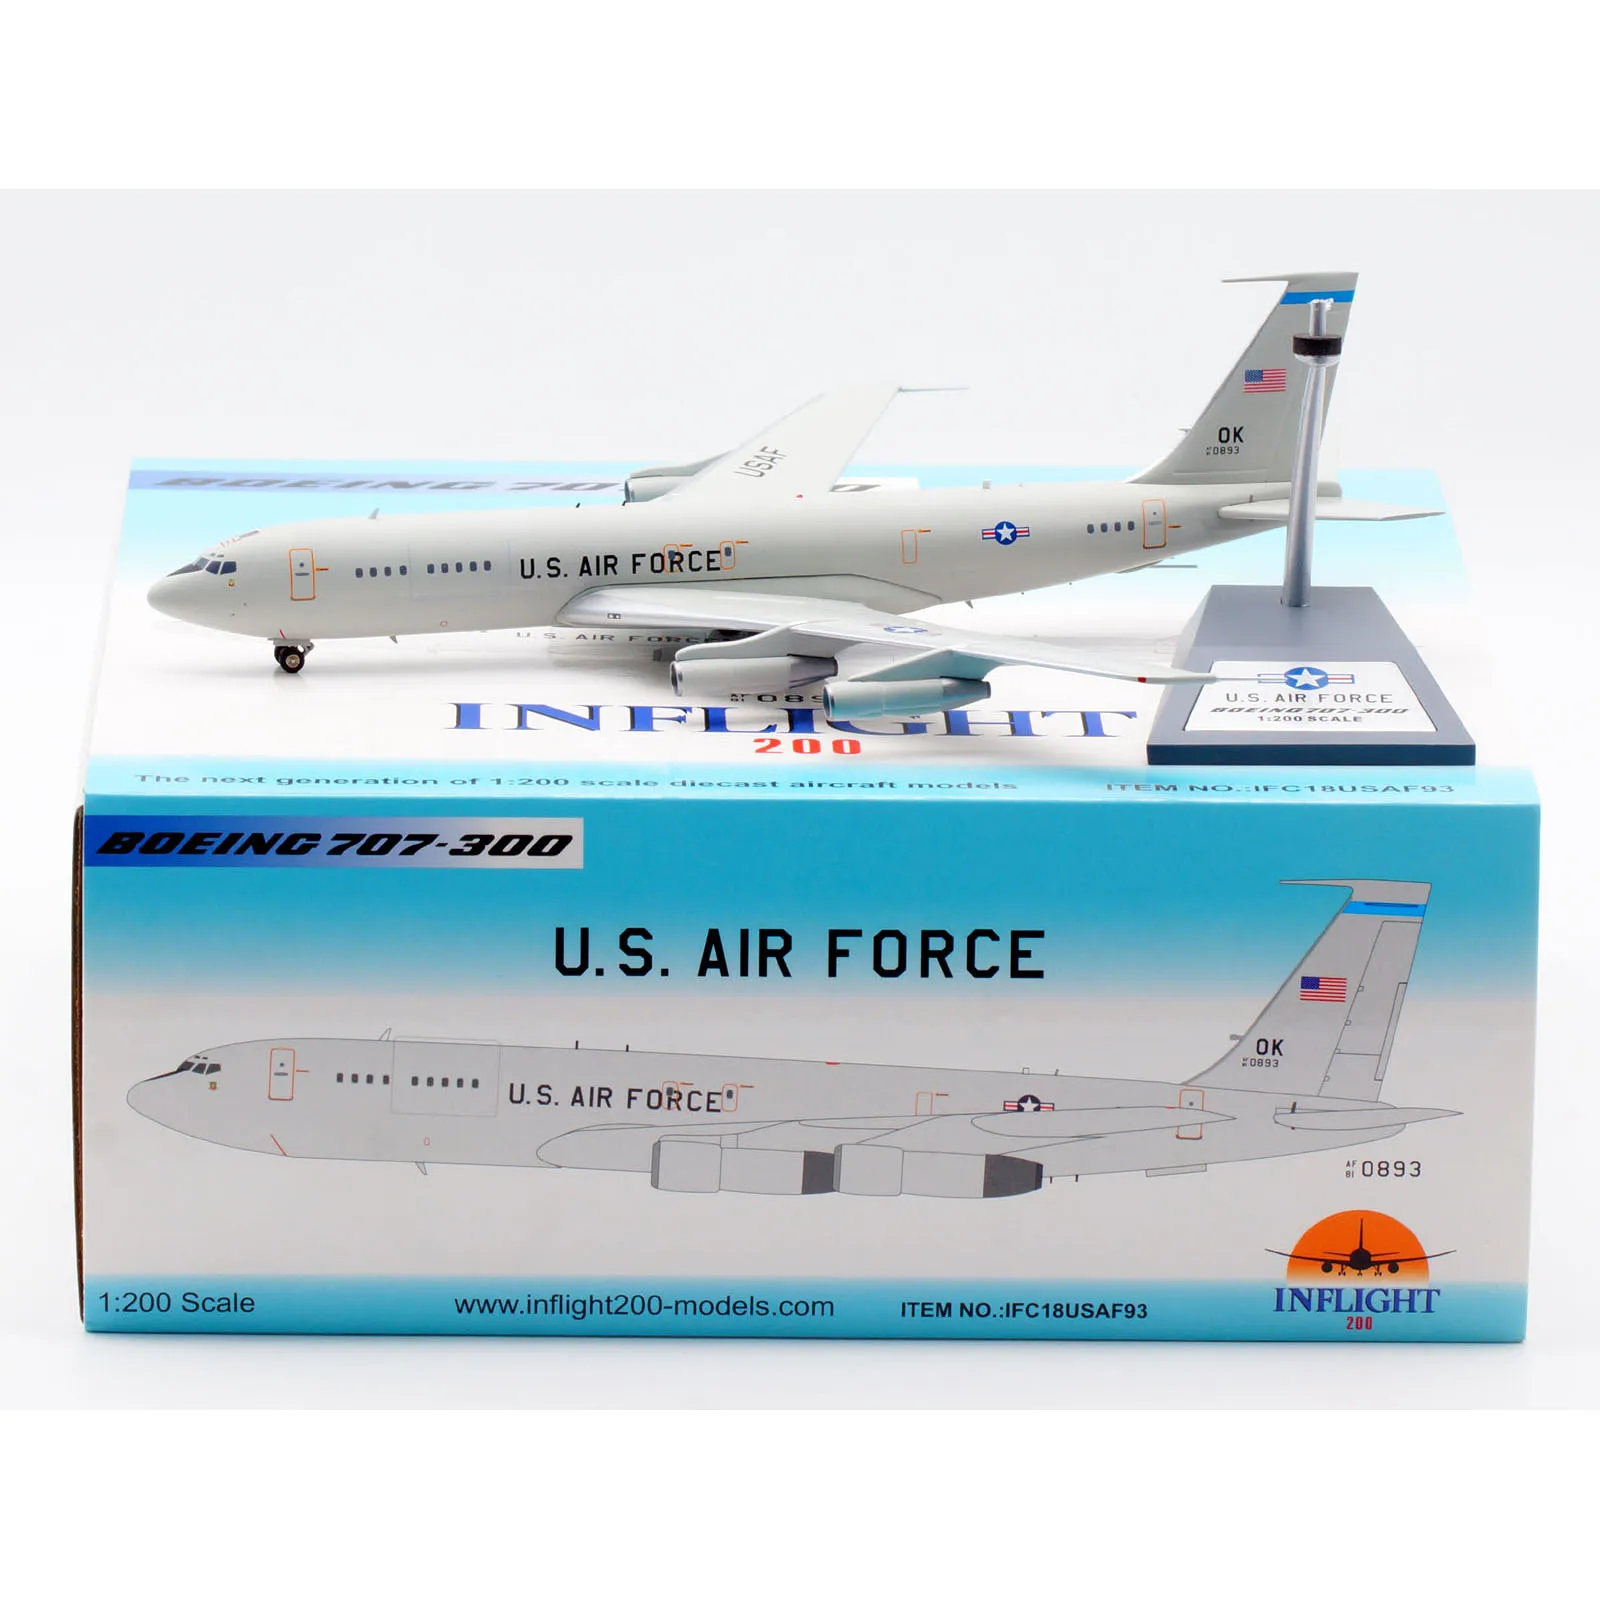 

Коллекционный самолёт из сплава IFC18USAF93, подарок, летательный аппарат 1:200 США, ВВС США, Боинг 707-300, модель 81-0893